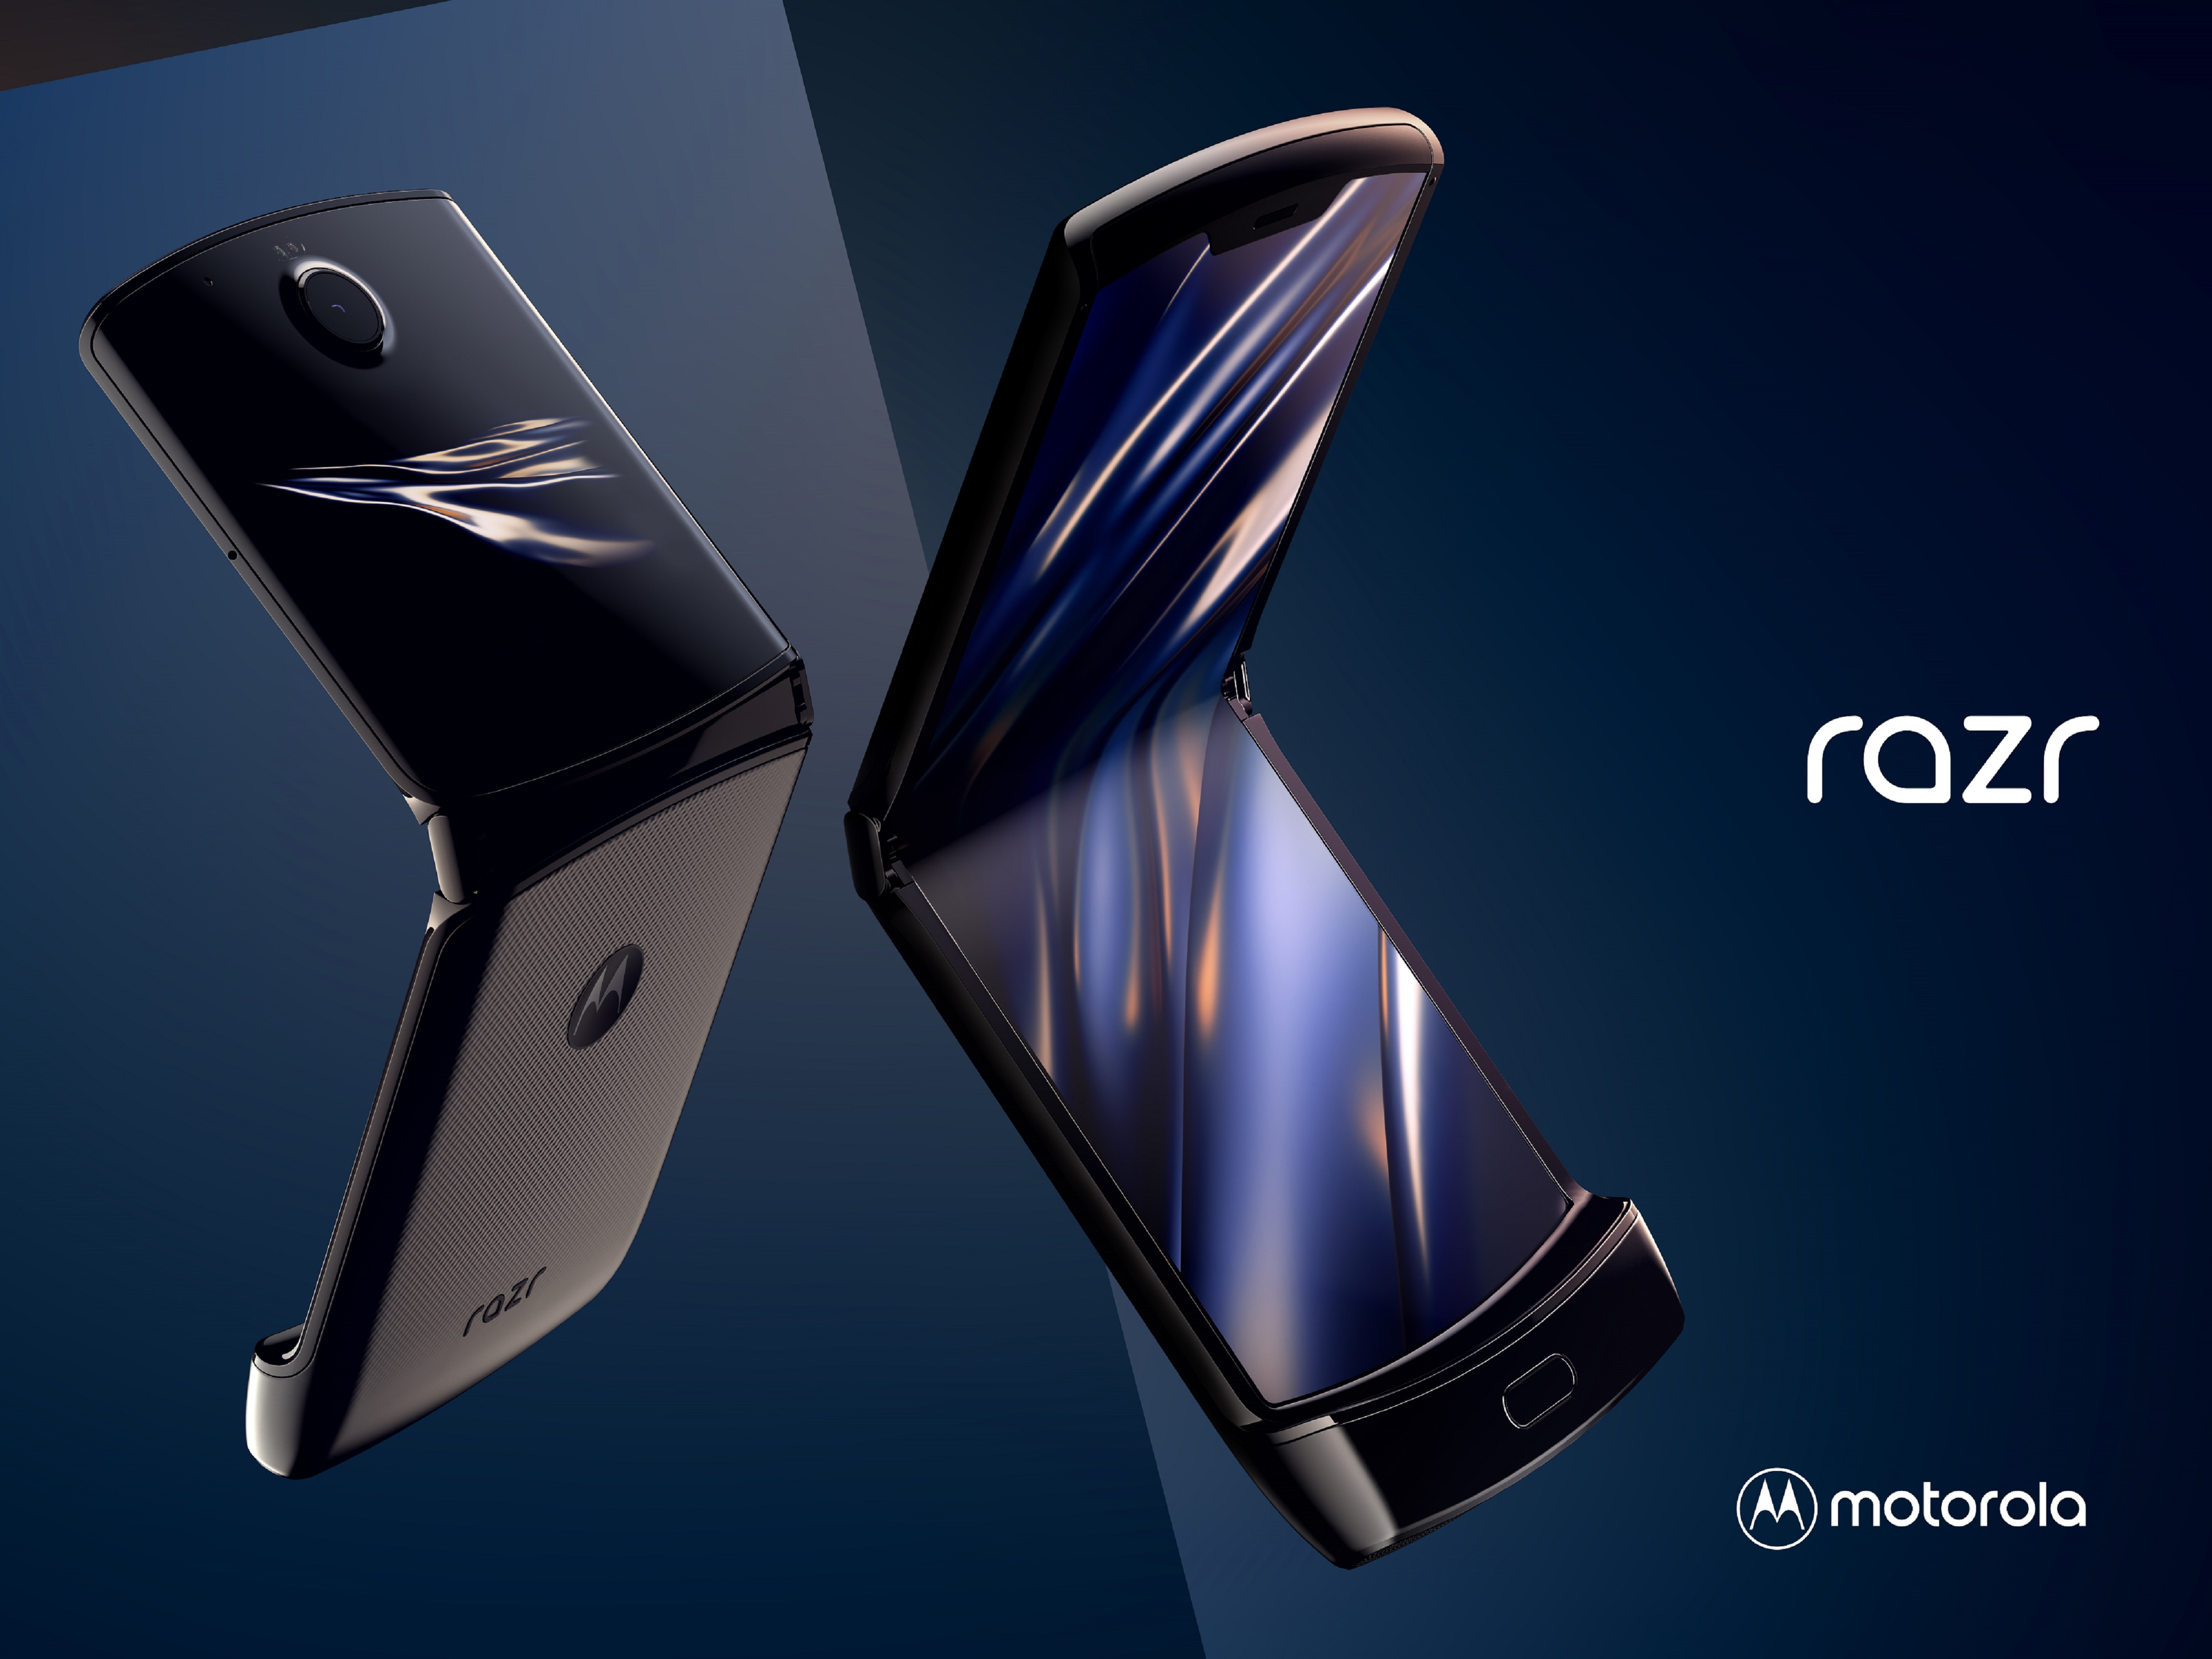 Torna il Motorola Razr, smartphone che ha caratterizzato un periodo diventando icona di stile e soprattutto di moda tra i giovani.